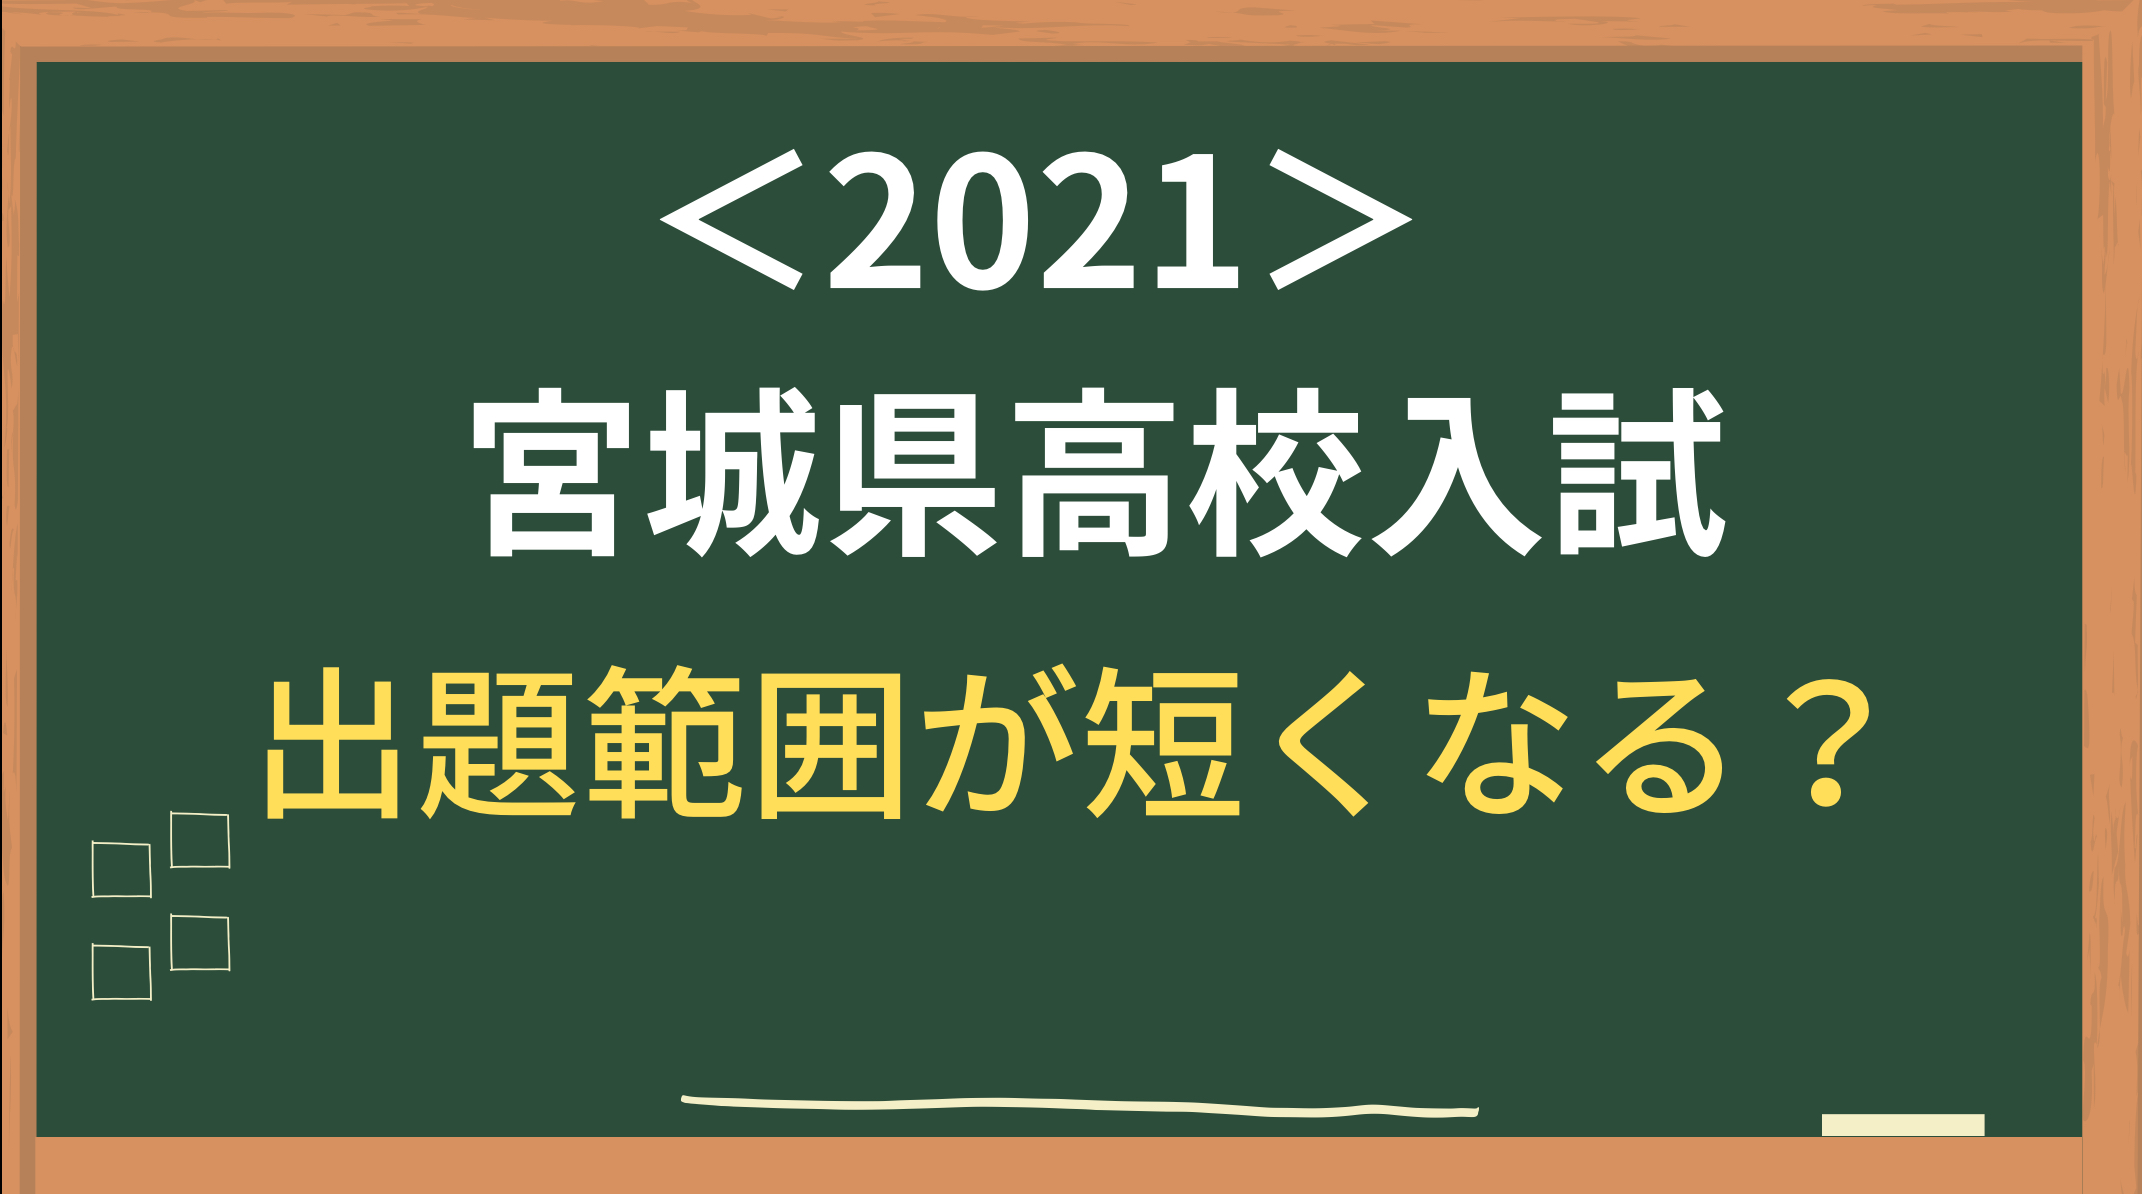 倍率 宮城 入試 2021 高校 県 公立 高校教育課